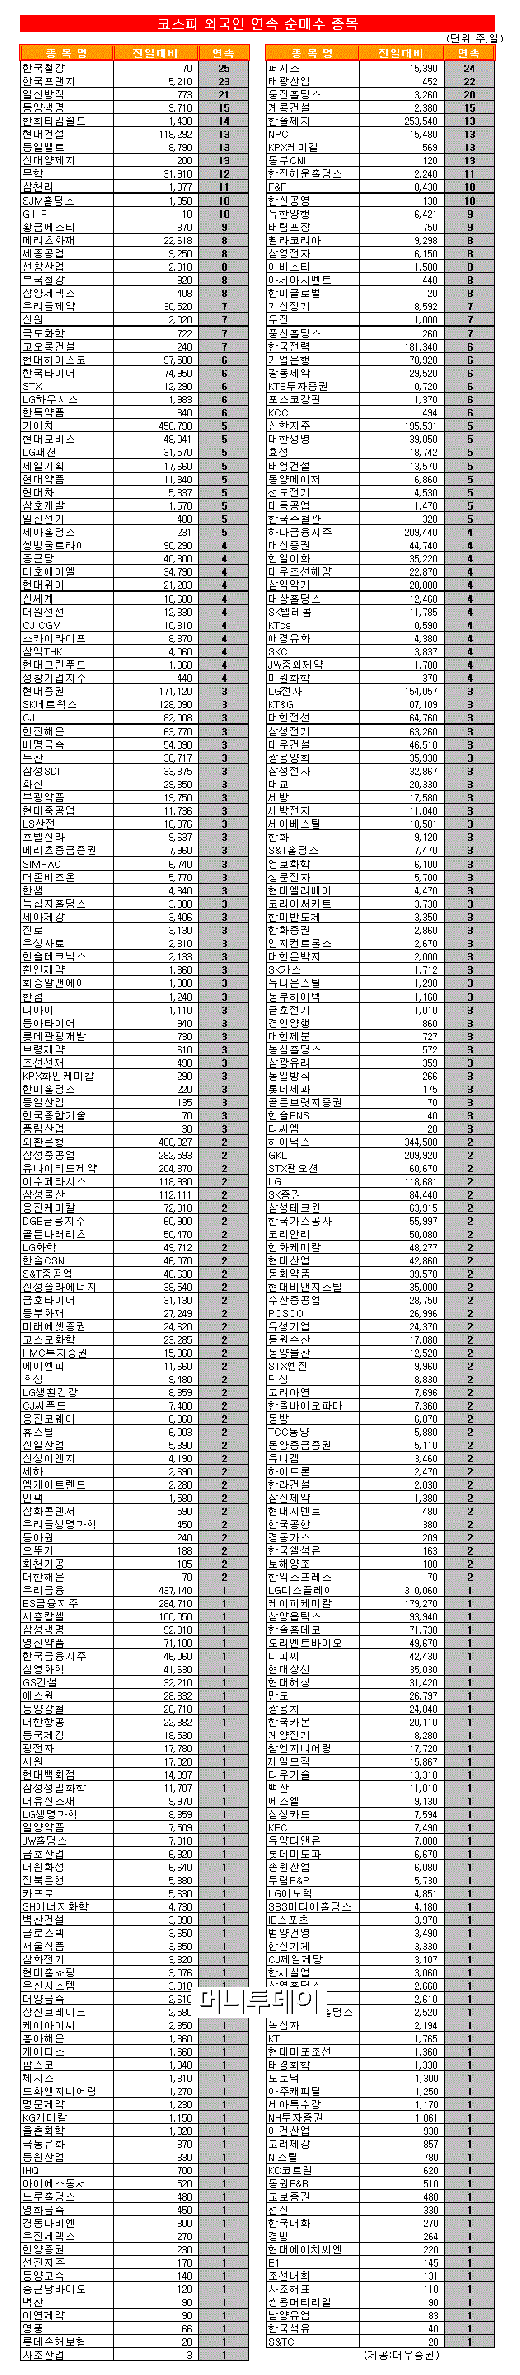 [표]코스피 외국인 연속 순매수 종목-1일